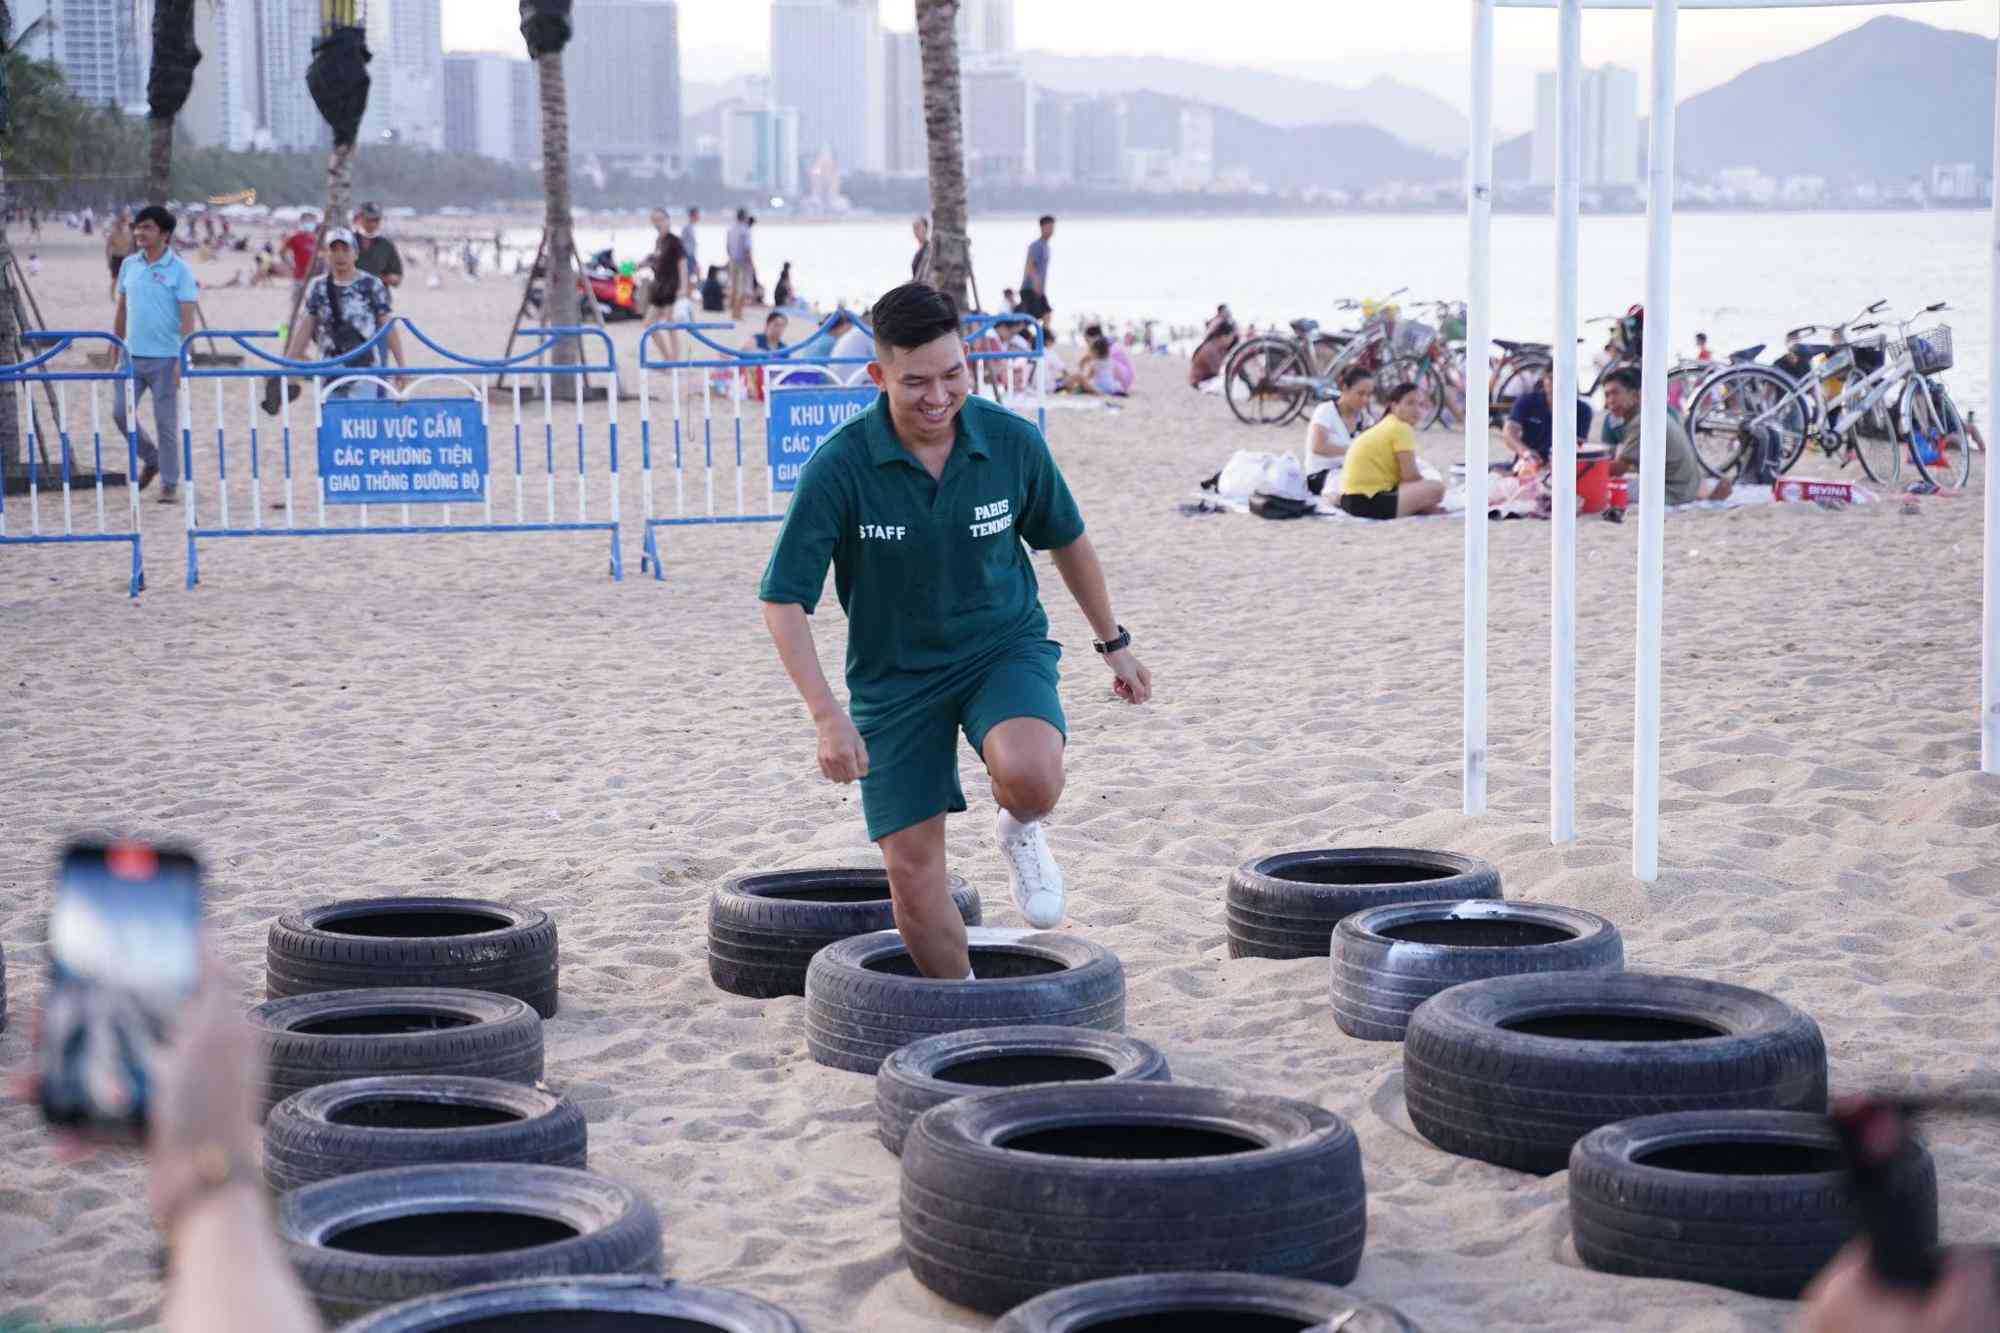 Toàn cảnh lễ hội biển OCEANHOLIC Nha Trang 2022 khiến bao phái mạnh lúc đi hết mình, lúc về hết stress - Ảnh 3.